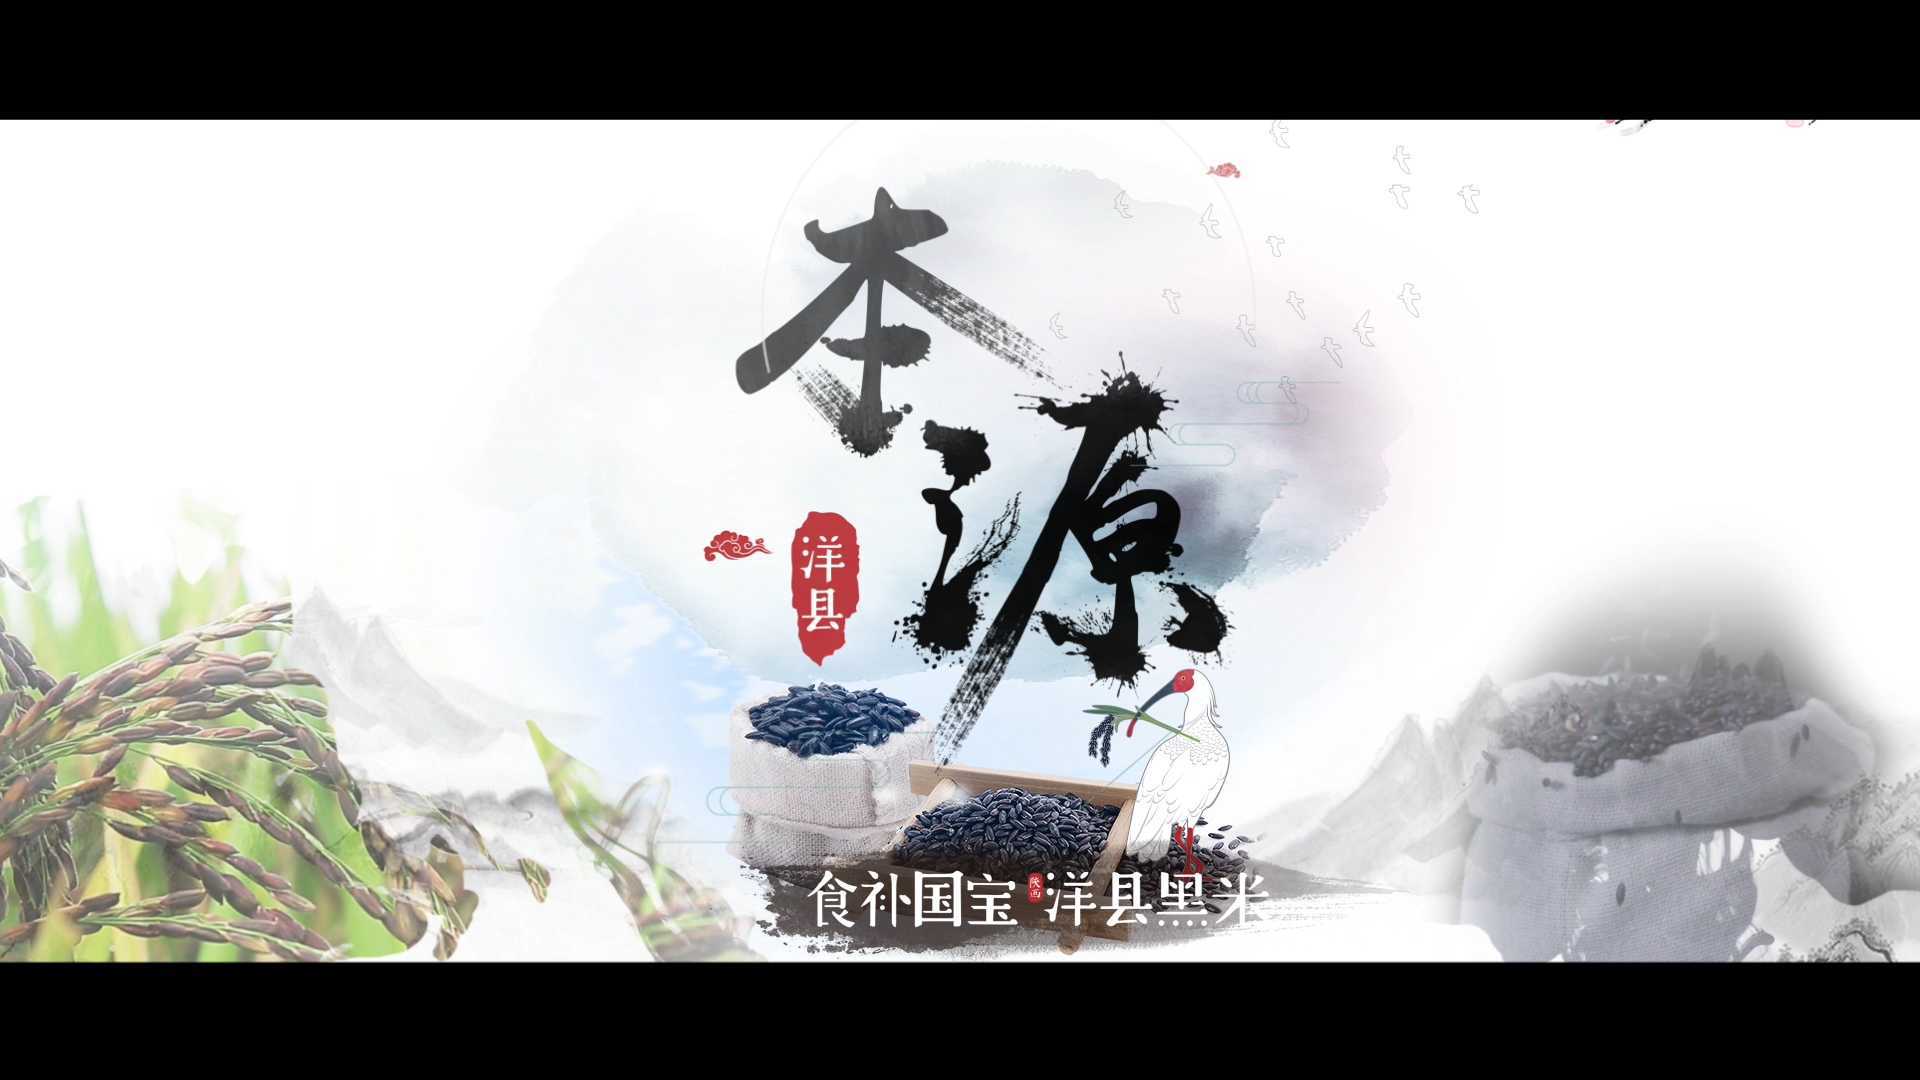 《本源》—2018洋县区域公用品牌宣传片